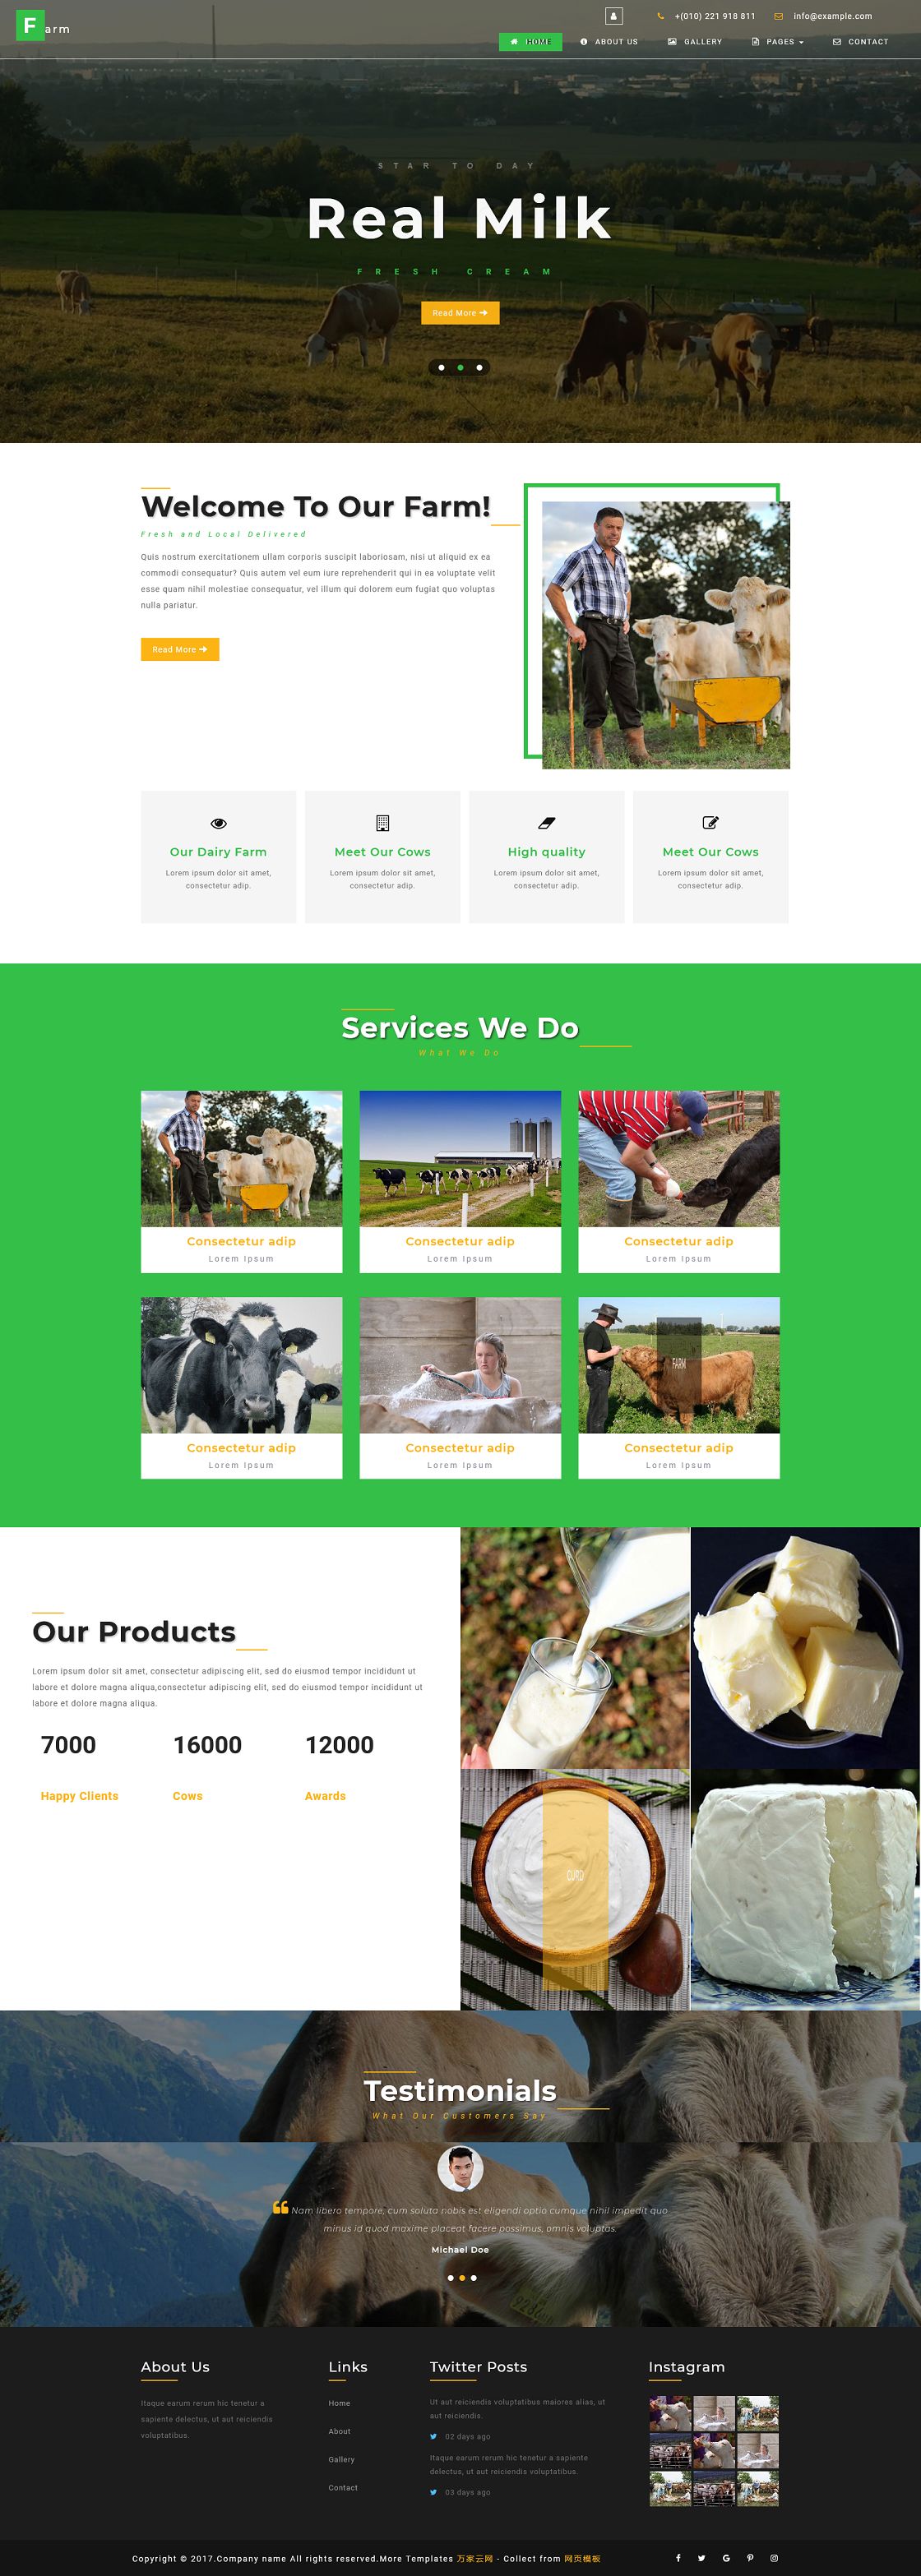 Farm 绿色高山奶牛农场响应式企业模板